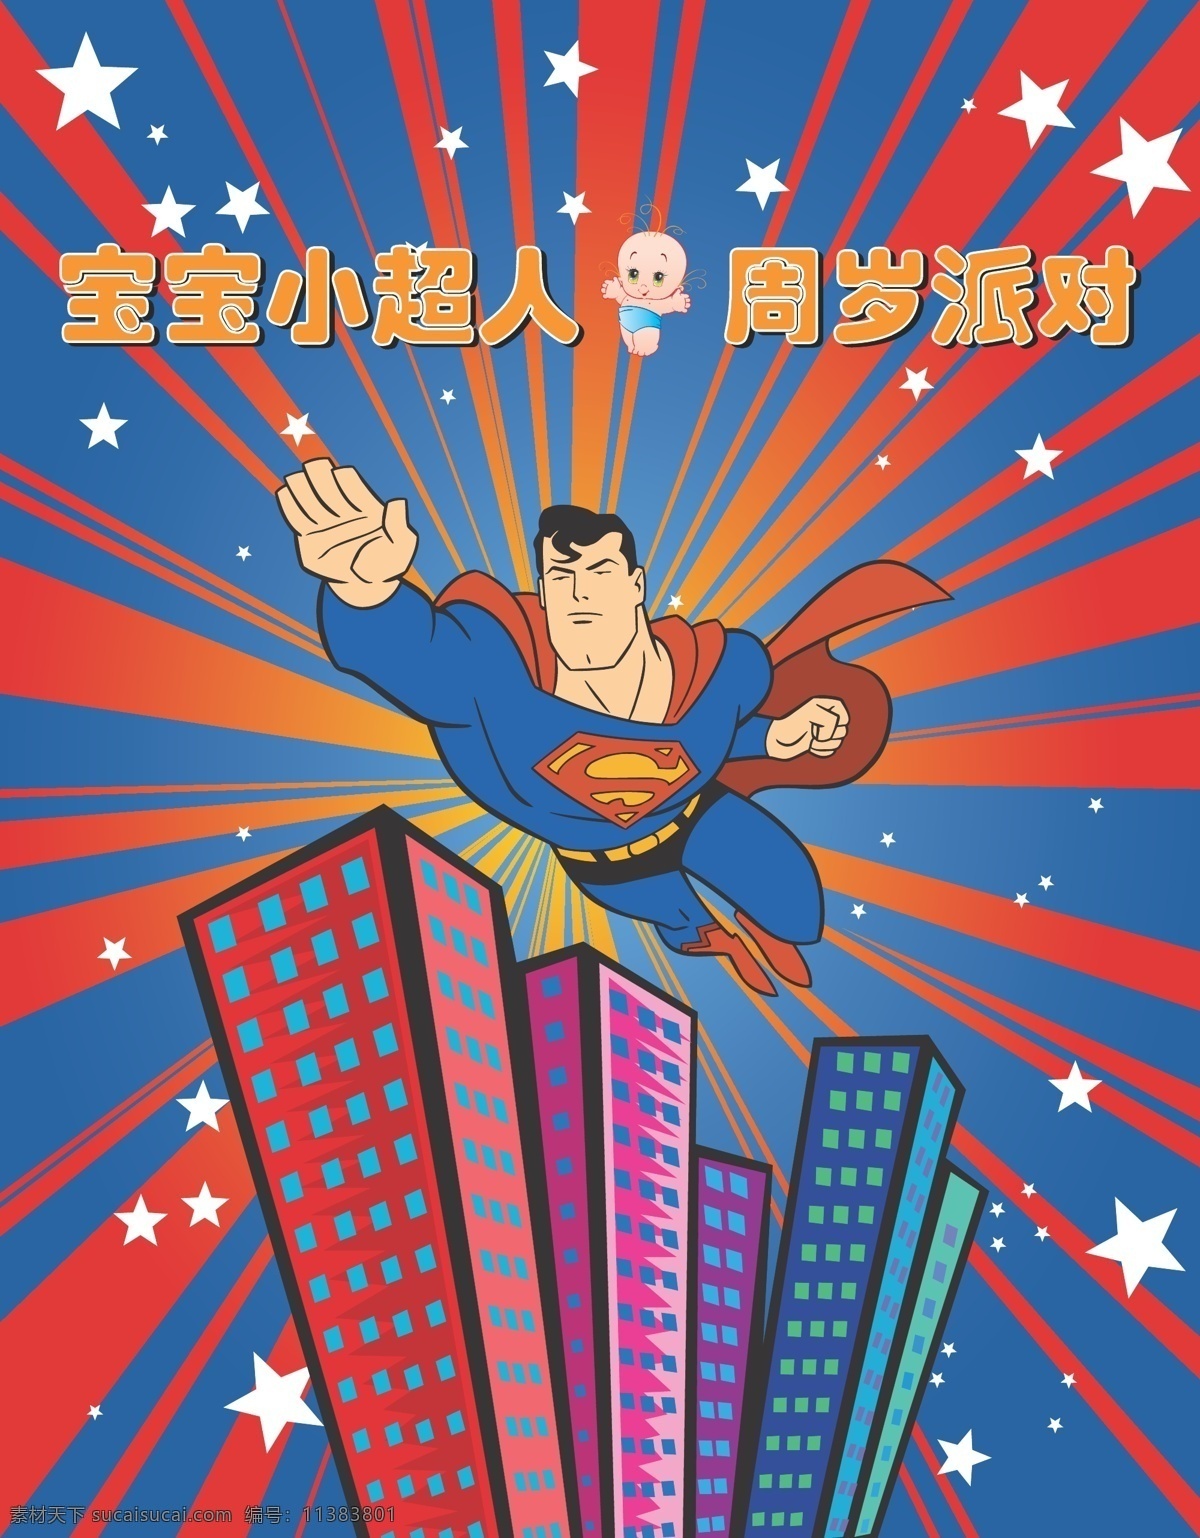 超人 手绘 漫画 矢量 卡通 superman 蝙蝠侠 batman 闪电侠 flash 华纳 dc漫画 超级英雄